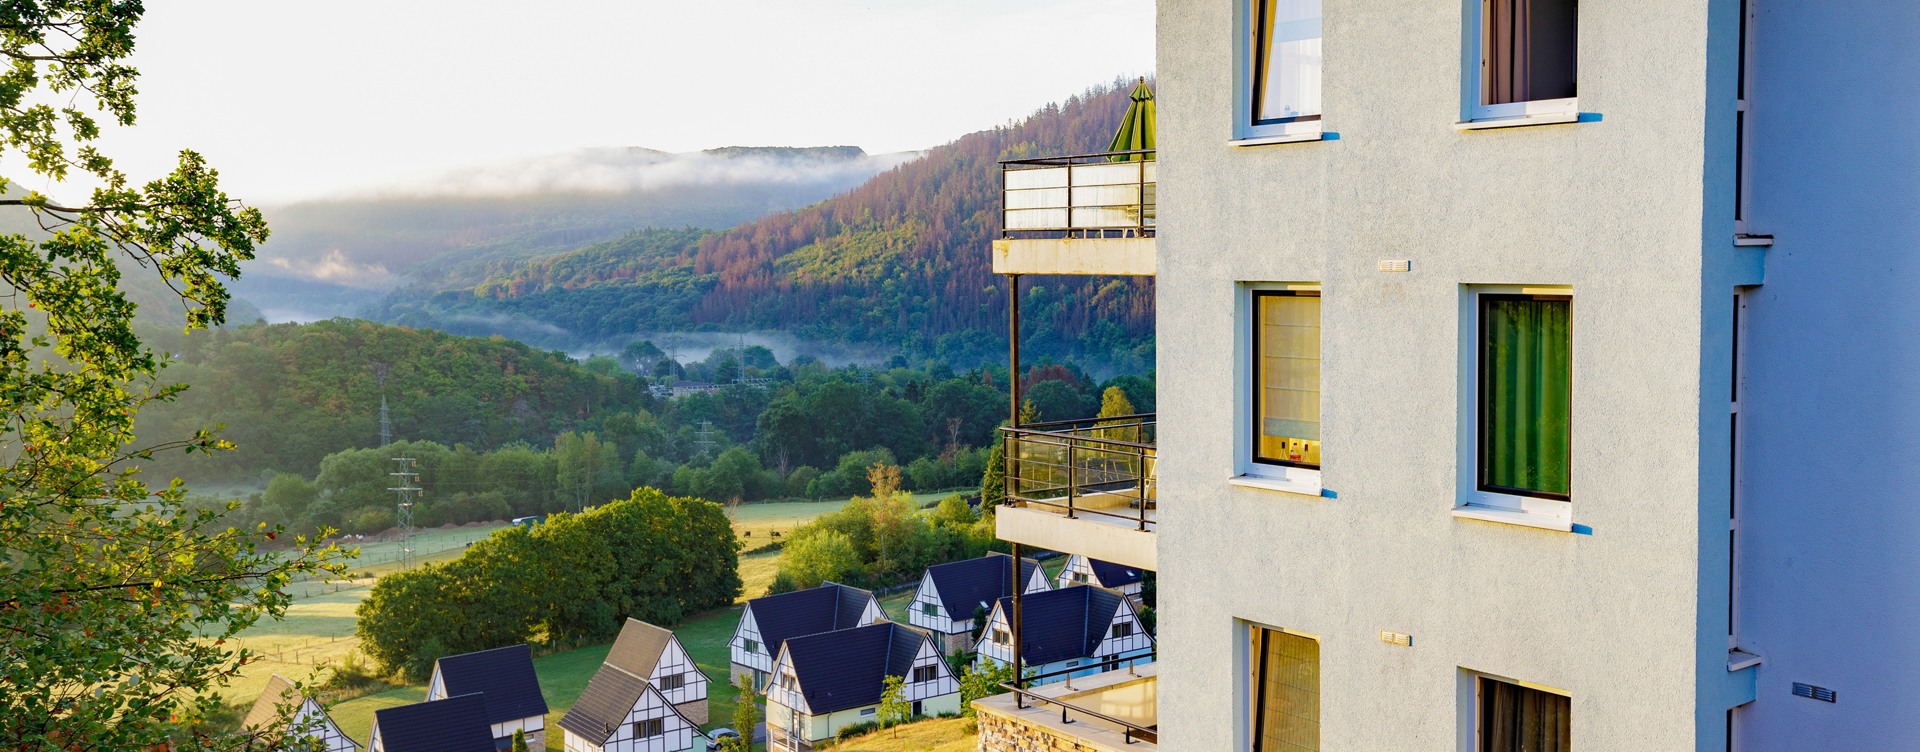 El complejo vacacional más bonito de Eifel:
Dormio Resort Eifeler Tor